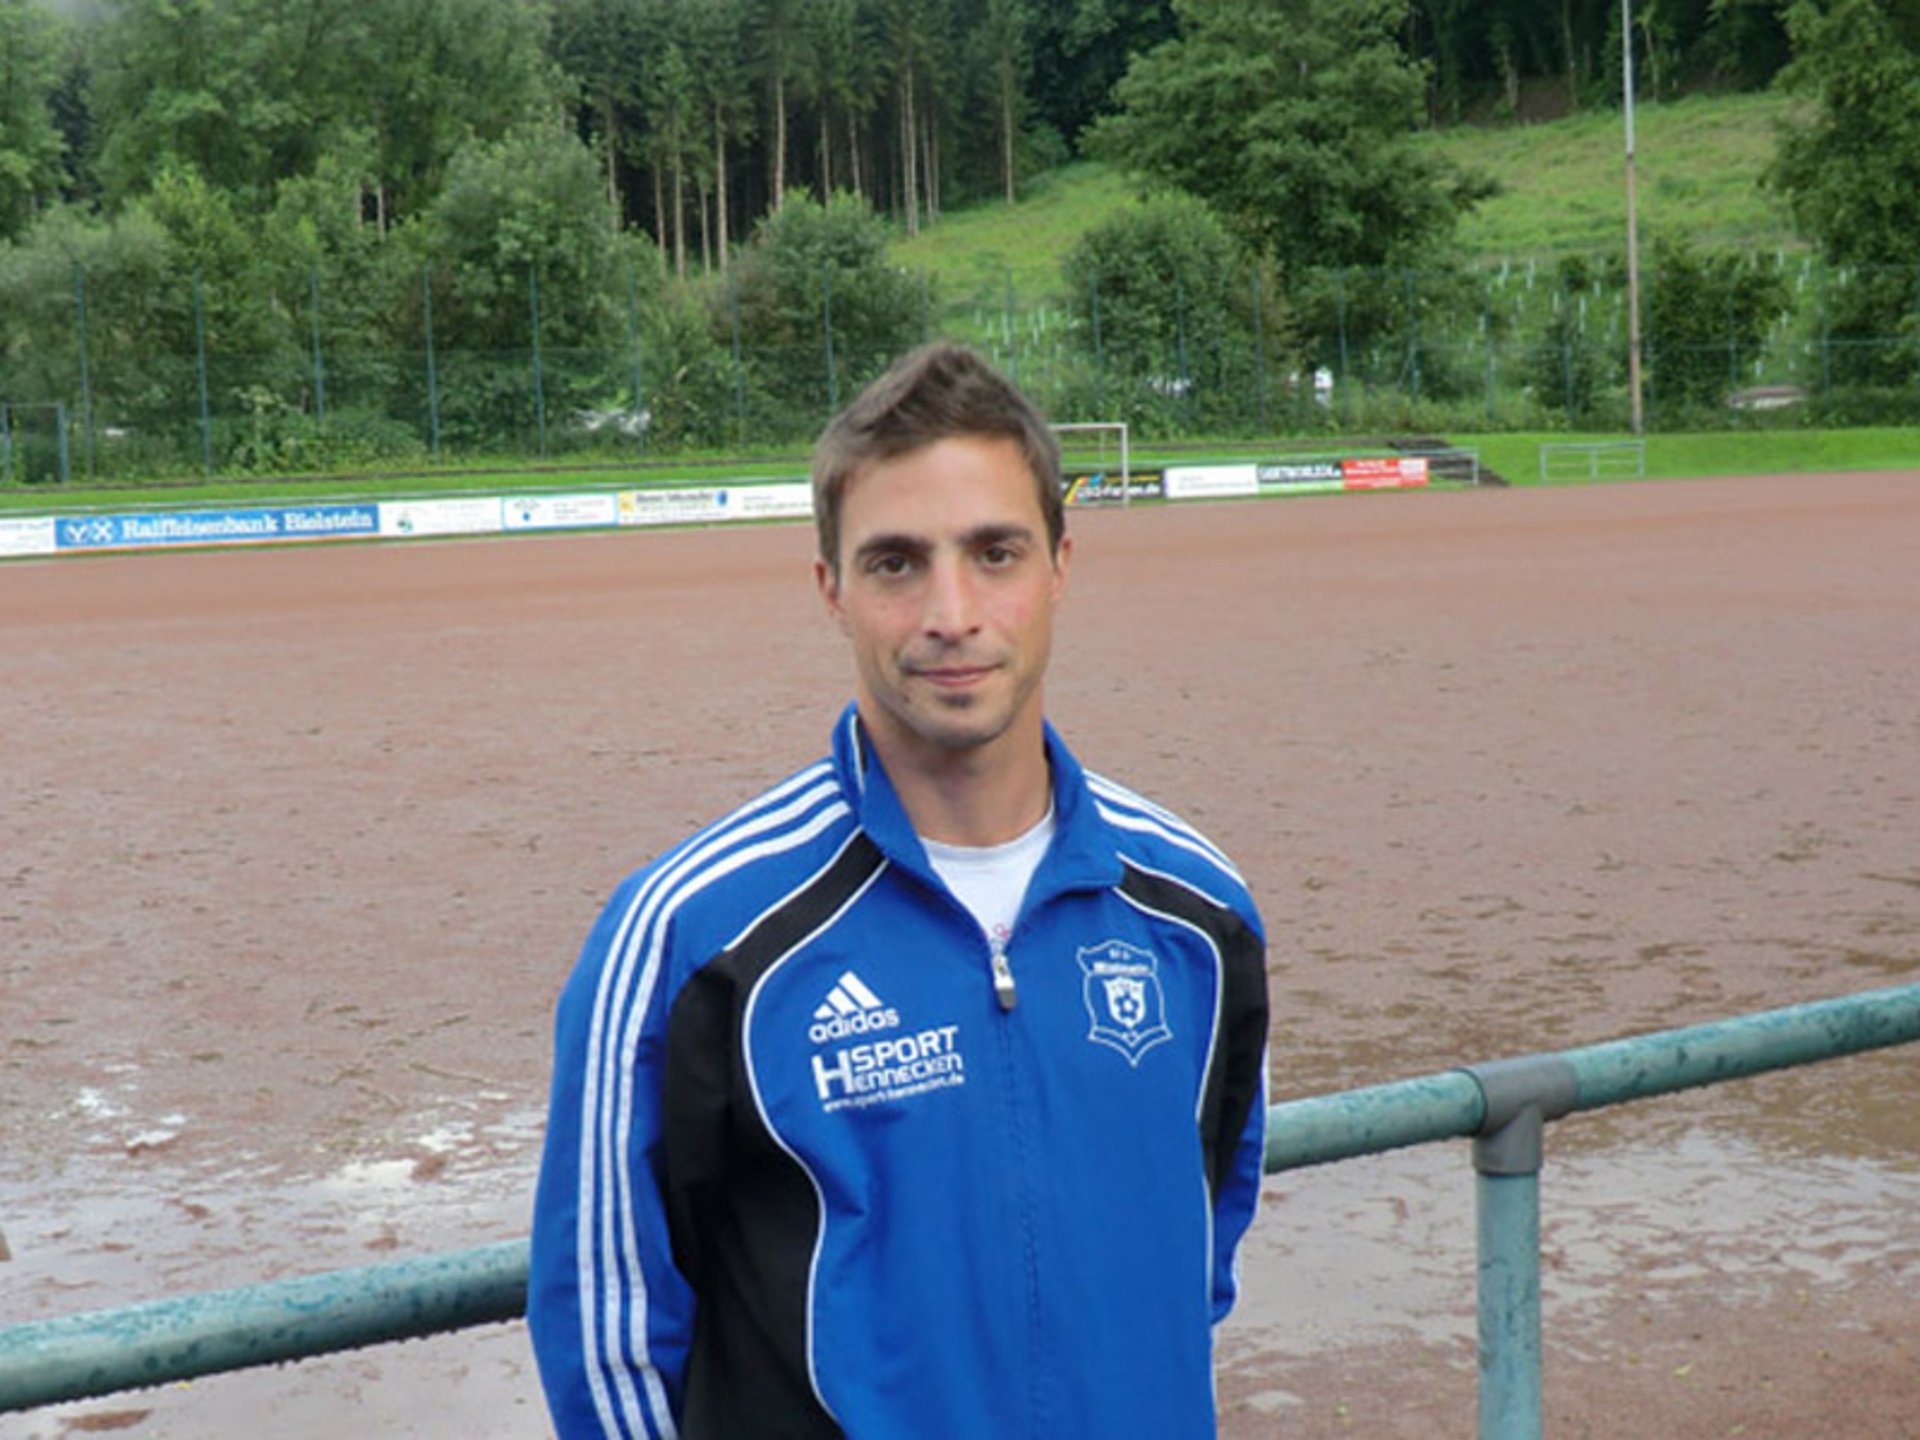 Daniel Pennella ist der neue Schiedsrichterobmann vom BSV Bielstein